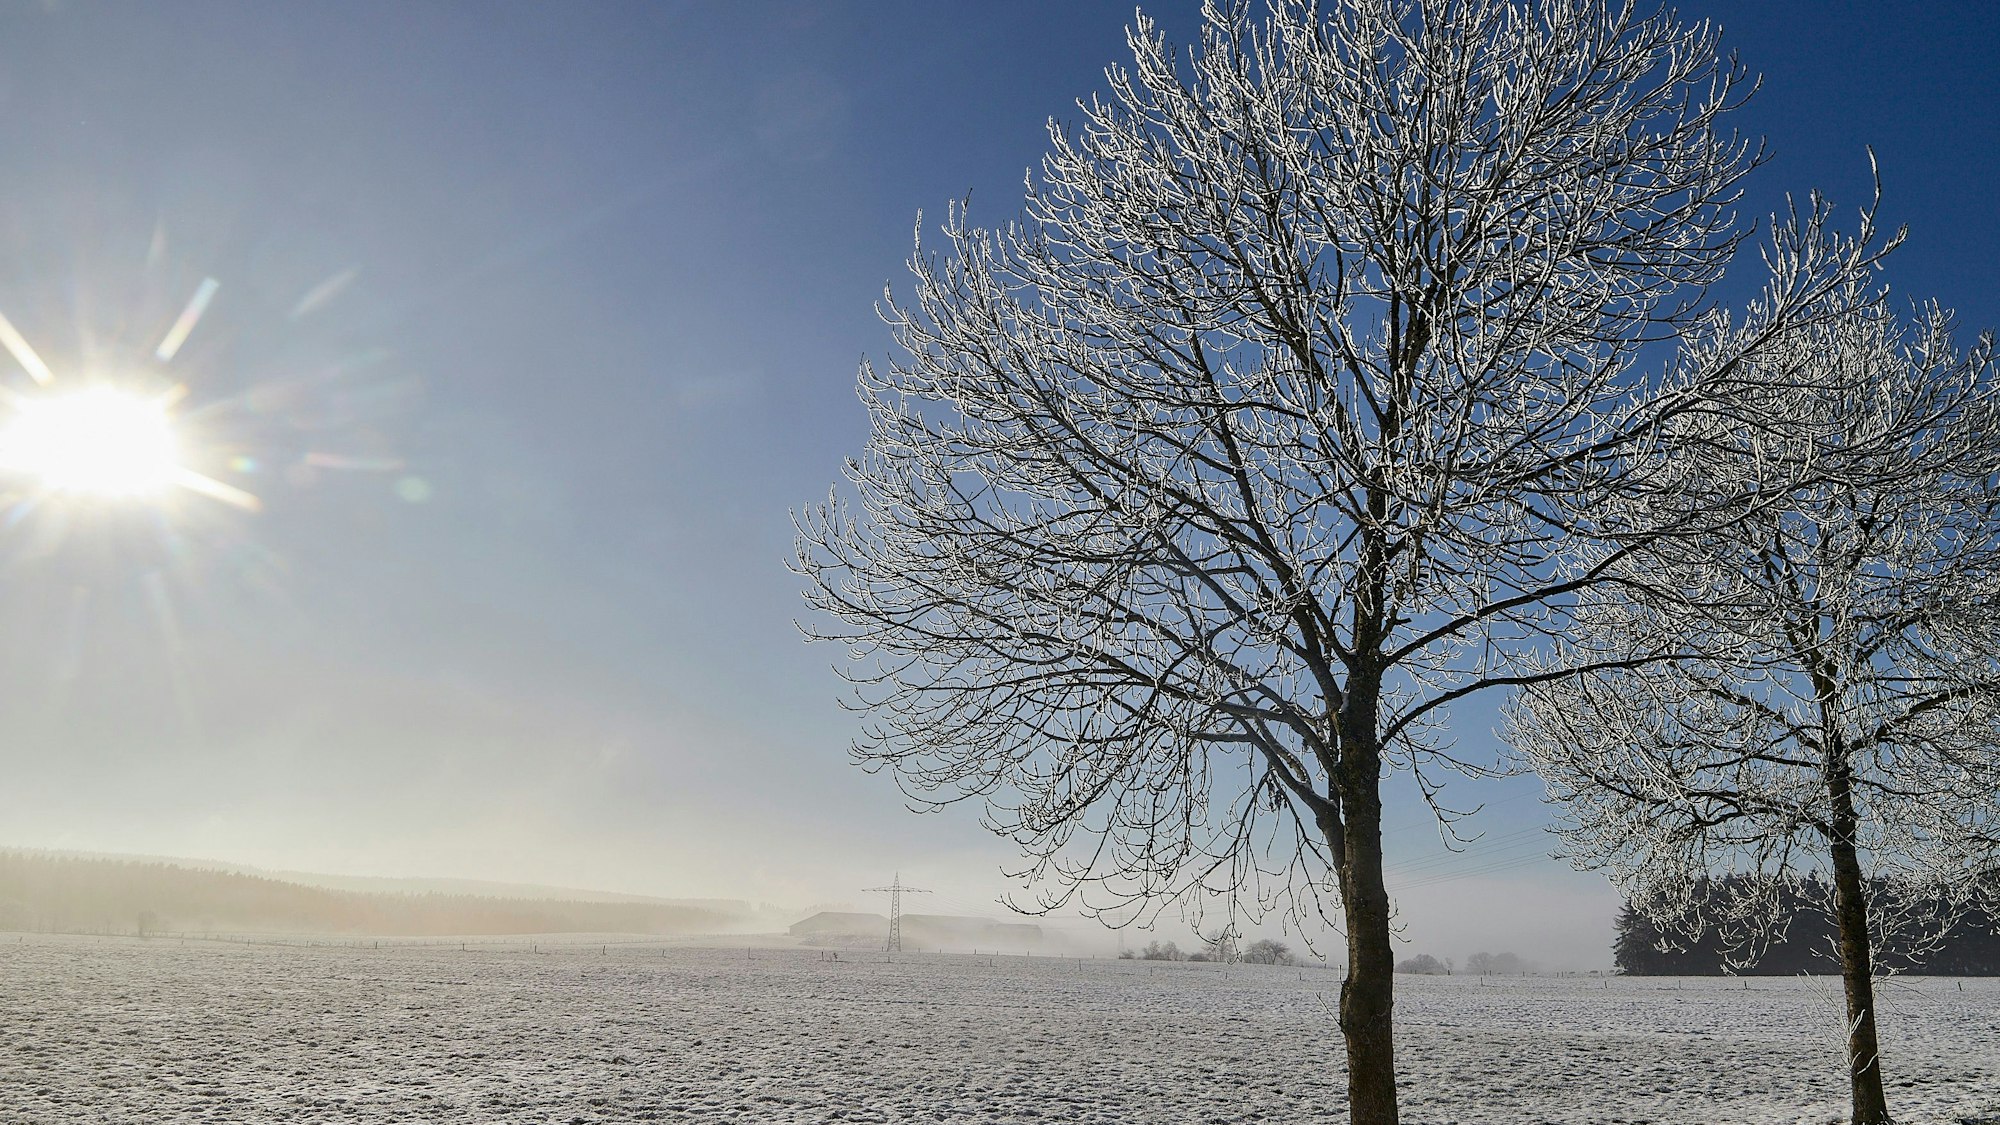 Die Sonne scheint an einem wolkenlosen Himmel auf eine dünn mit Schnee bedeckte Wiese, an deren Rand Bäume mit Raureif zu sehen sind.